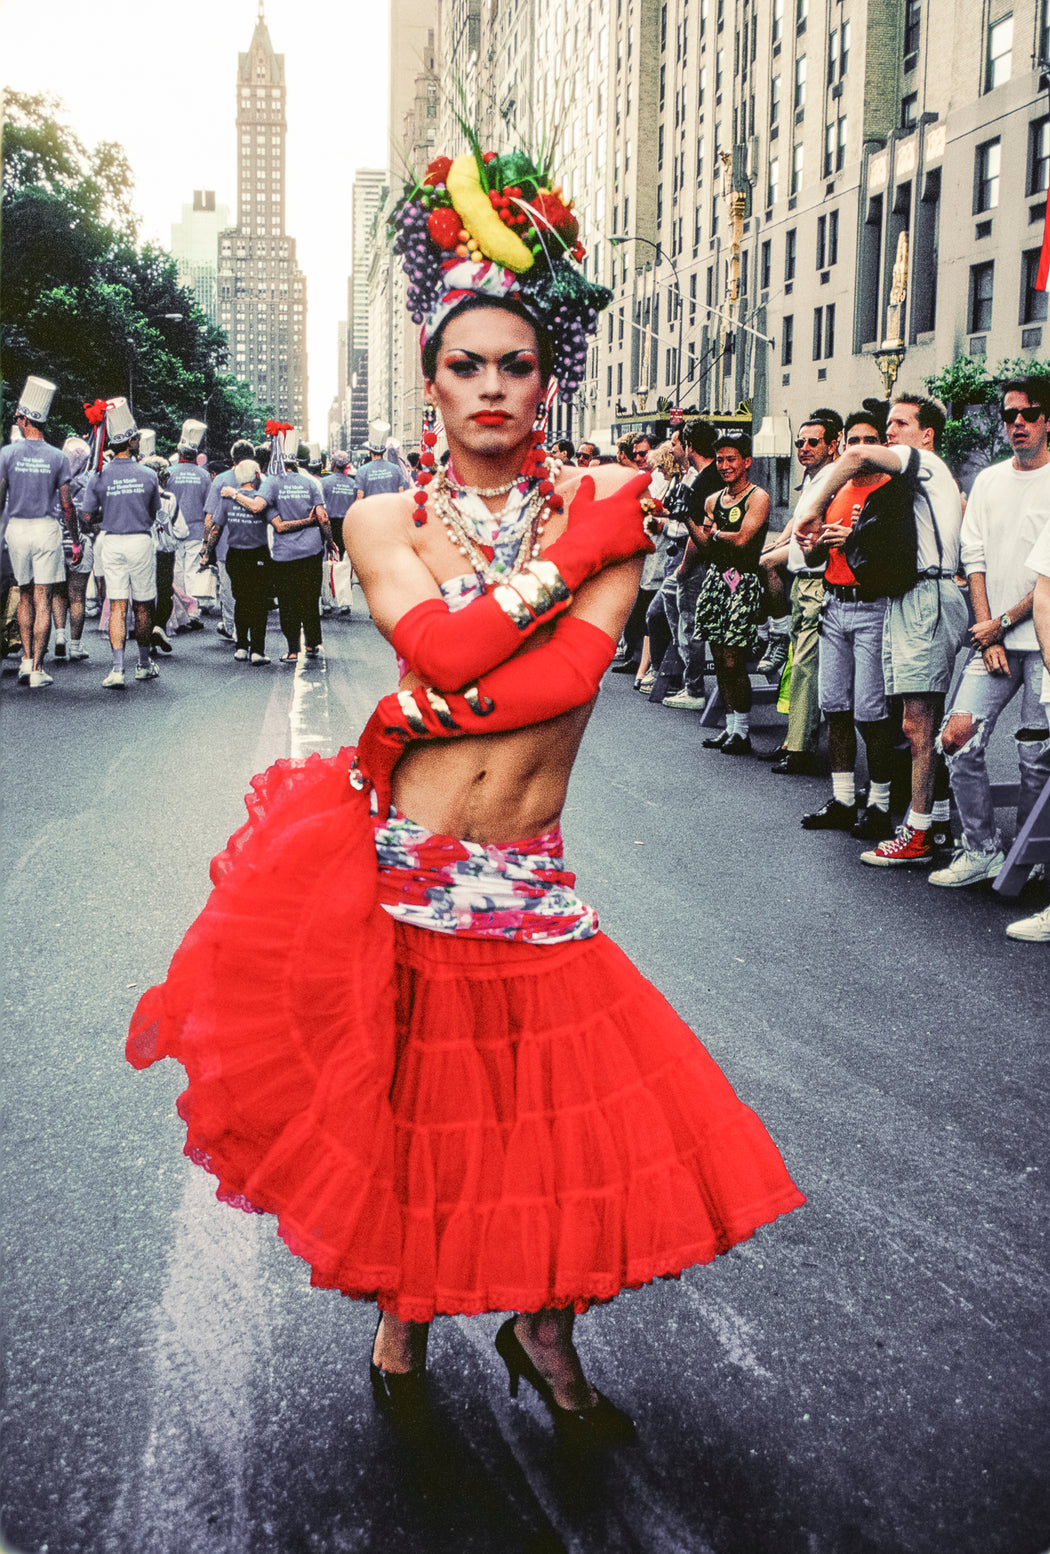 Drag Queen as Carmen Miranda, NYC Pride Parade, 1990